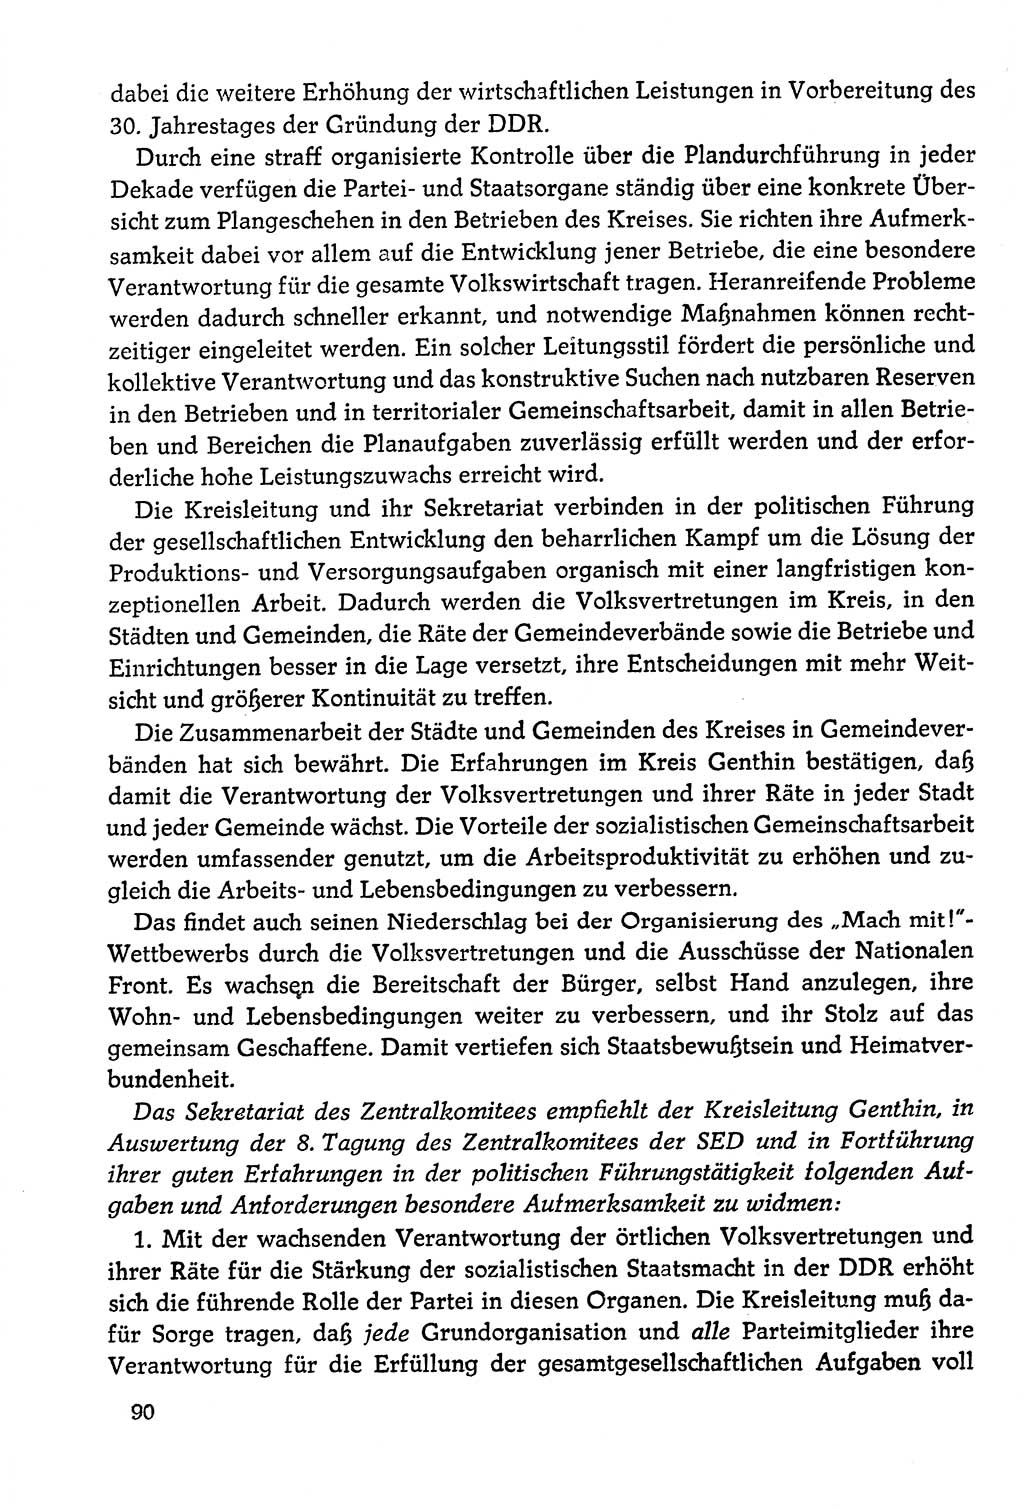 Dokumente der Sozialistischen Einheitspartei Deutschlands (SED) [Deutsche Demokratische Republik (DDR)] 1978-1979, Seite 90 (Dok. SED DDR 1978-1979, S. 90)